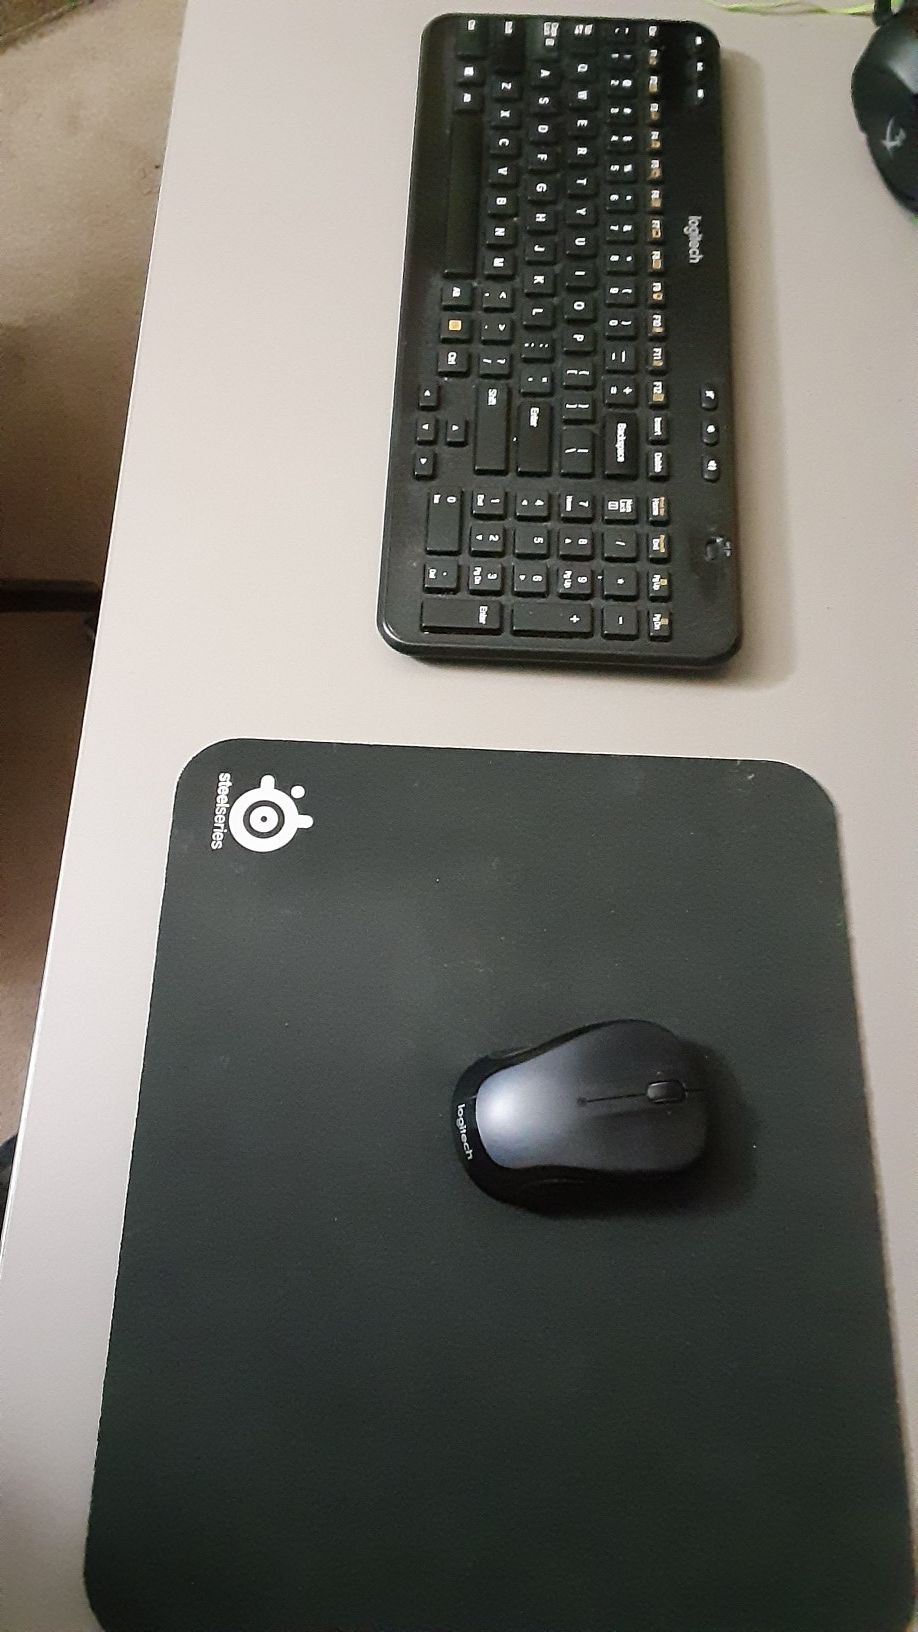 Wireless Logitech Mouse,keyboard. steelseries mousepad